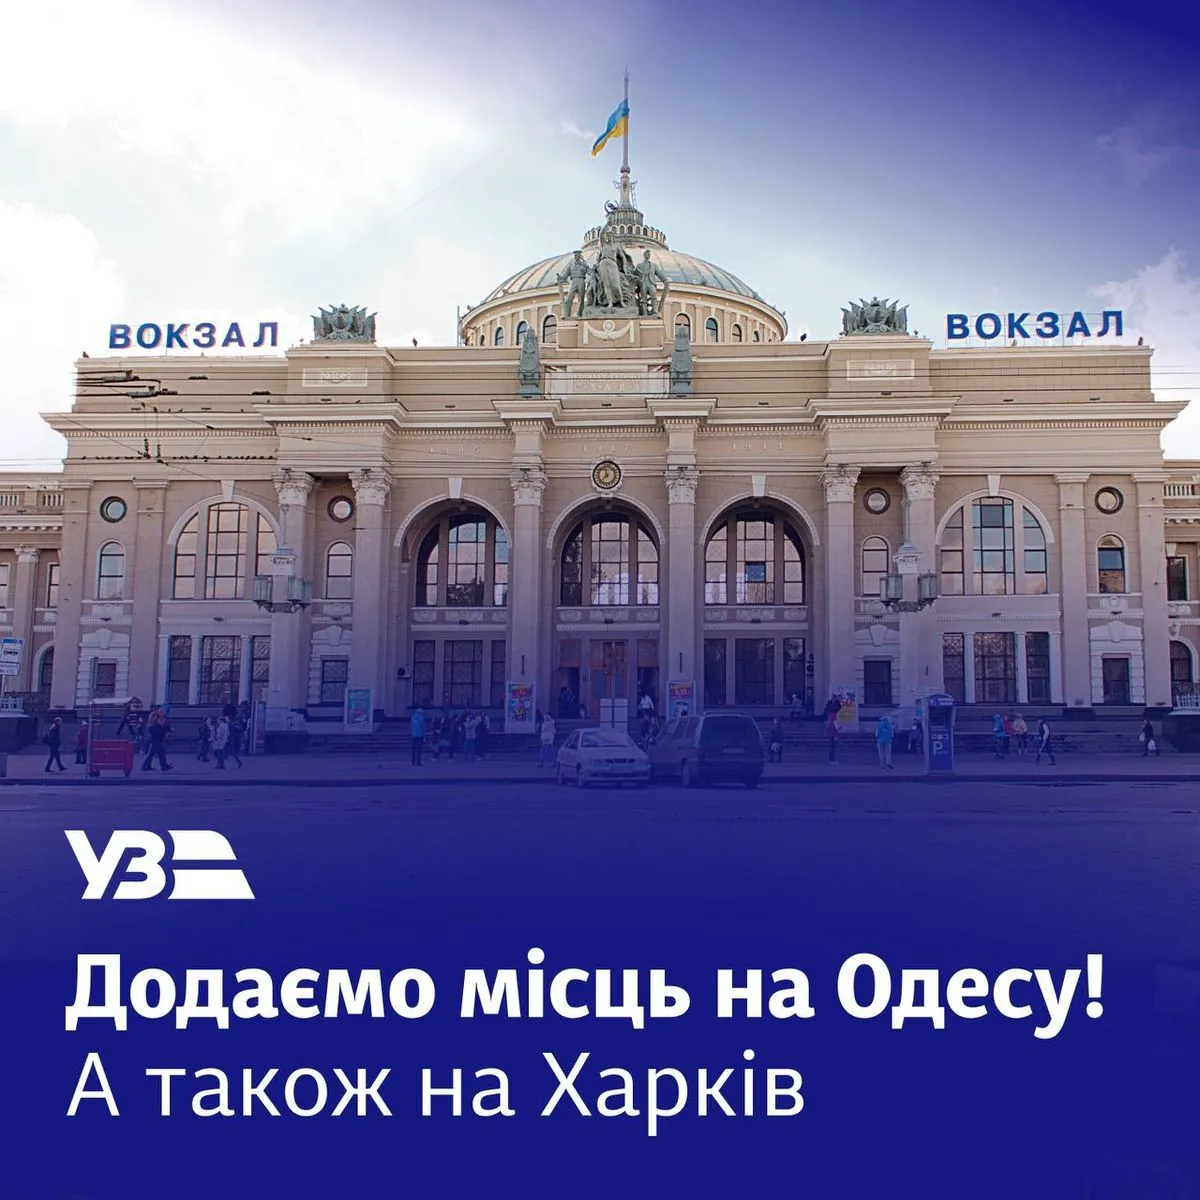 Поездка к морю: в УЗ назначили дополнительный поезд Киев - Одесса